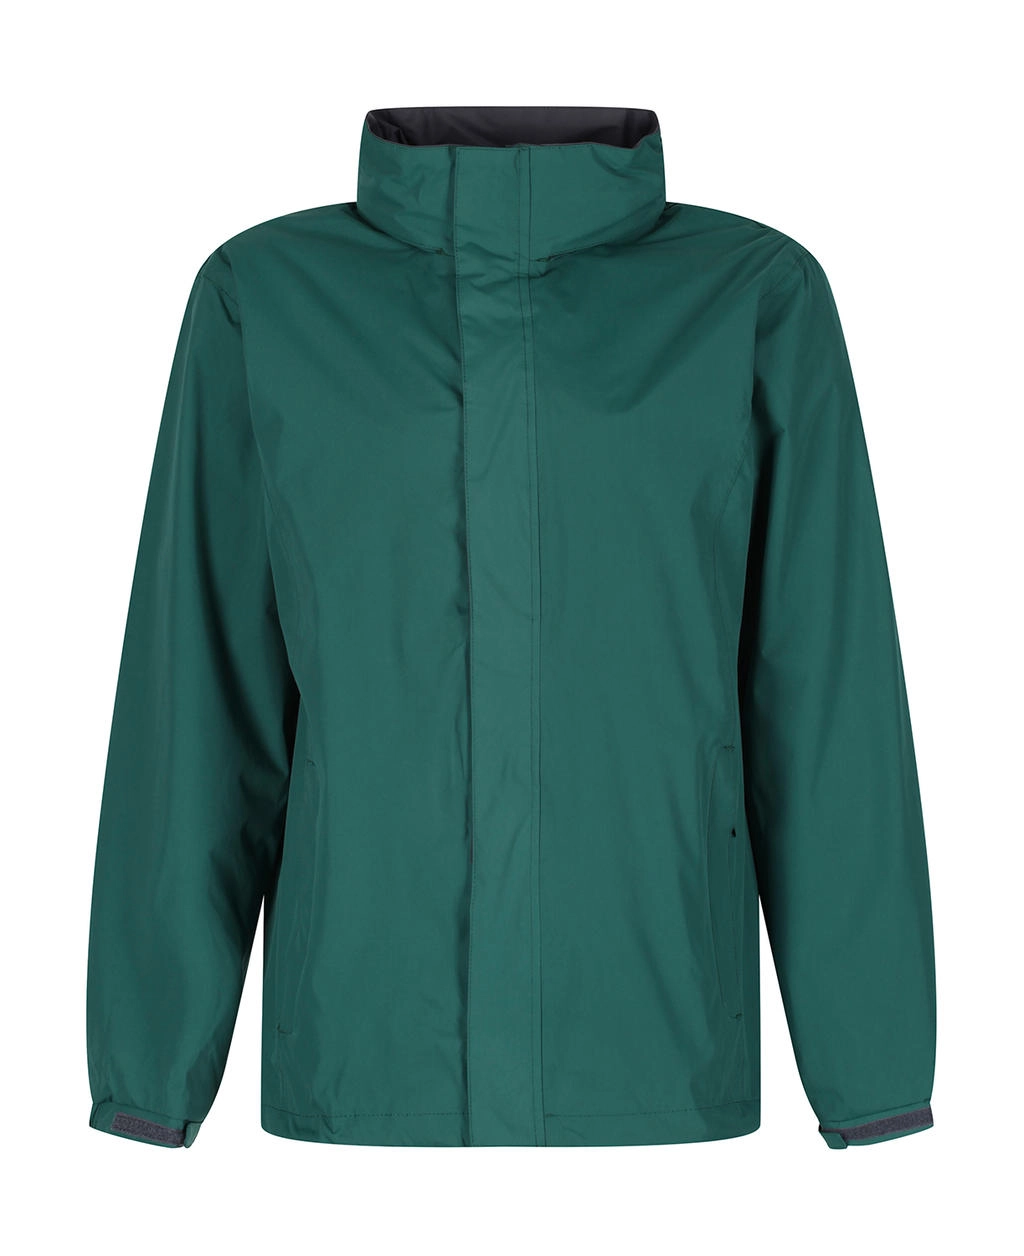 Ardmore Jacket zum Besticken und Bedrucken in der Farbe Bottle Green/Seal Grey mit Ihren Logo, Schriftzug oder Motiv.